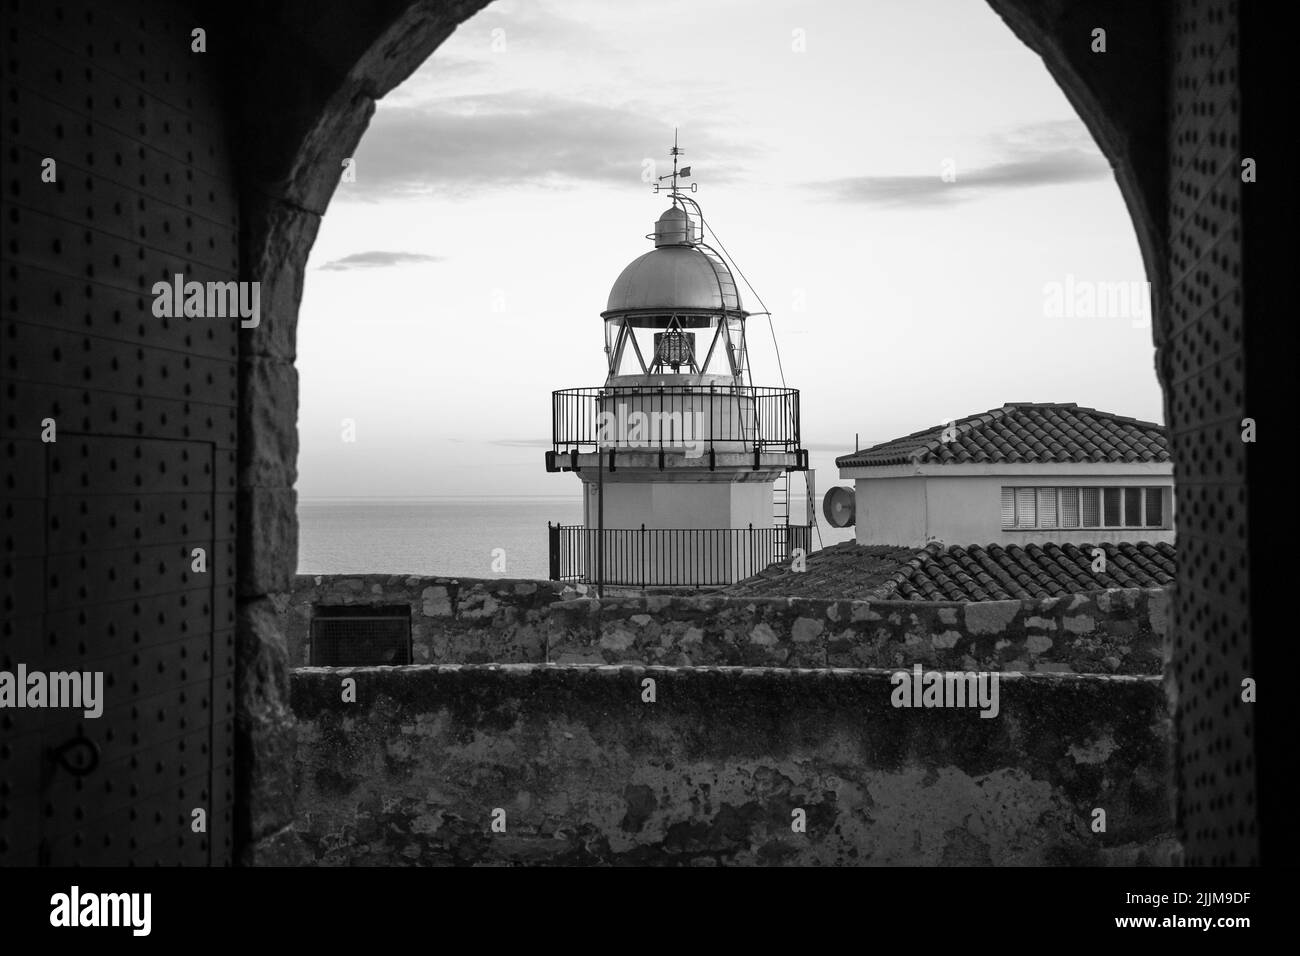 Une photo en niveaux de gris du phare de Peniscola, une ancienne ville fortifiée appelée la « ville sur la mer » en Espagne Banque D'Images